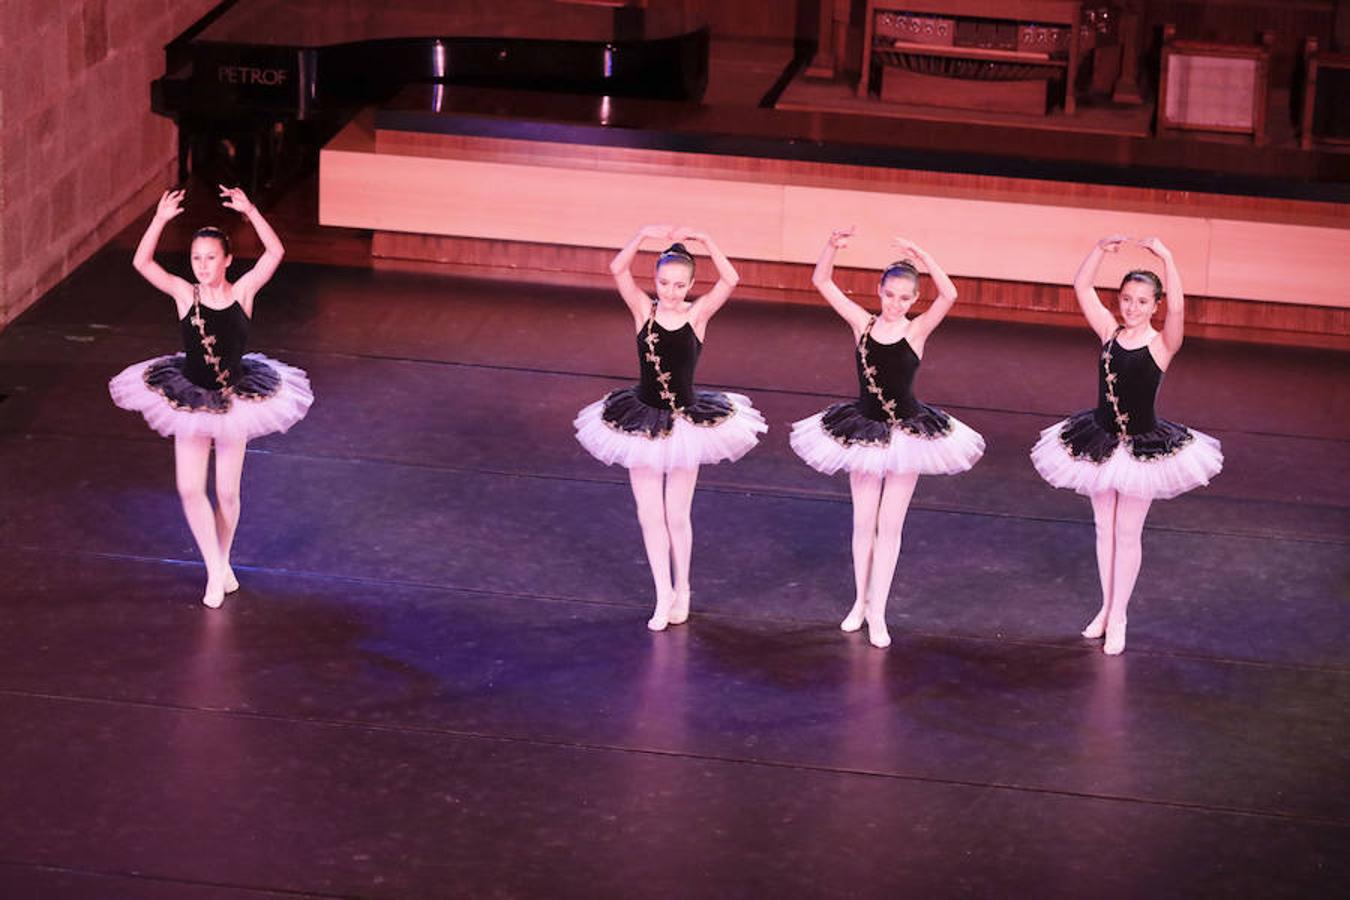 El complejo cultural San Francisco acoge la gala de final de curso de los alumnos del Conservatorio Elemental de Danza de la Diputación cacereña